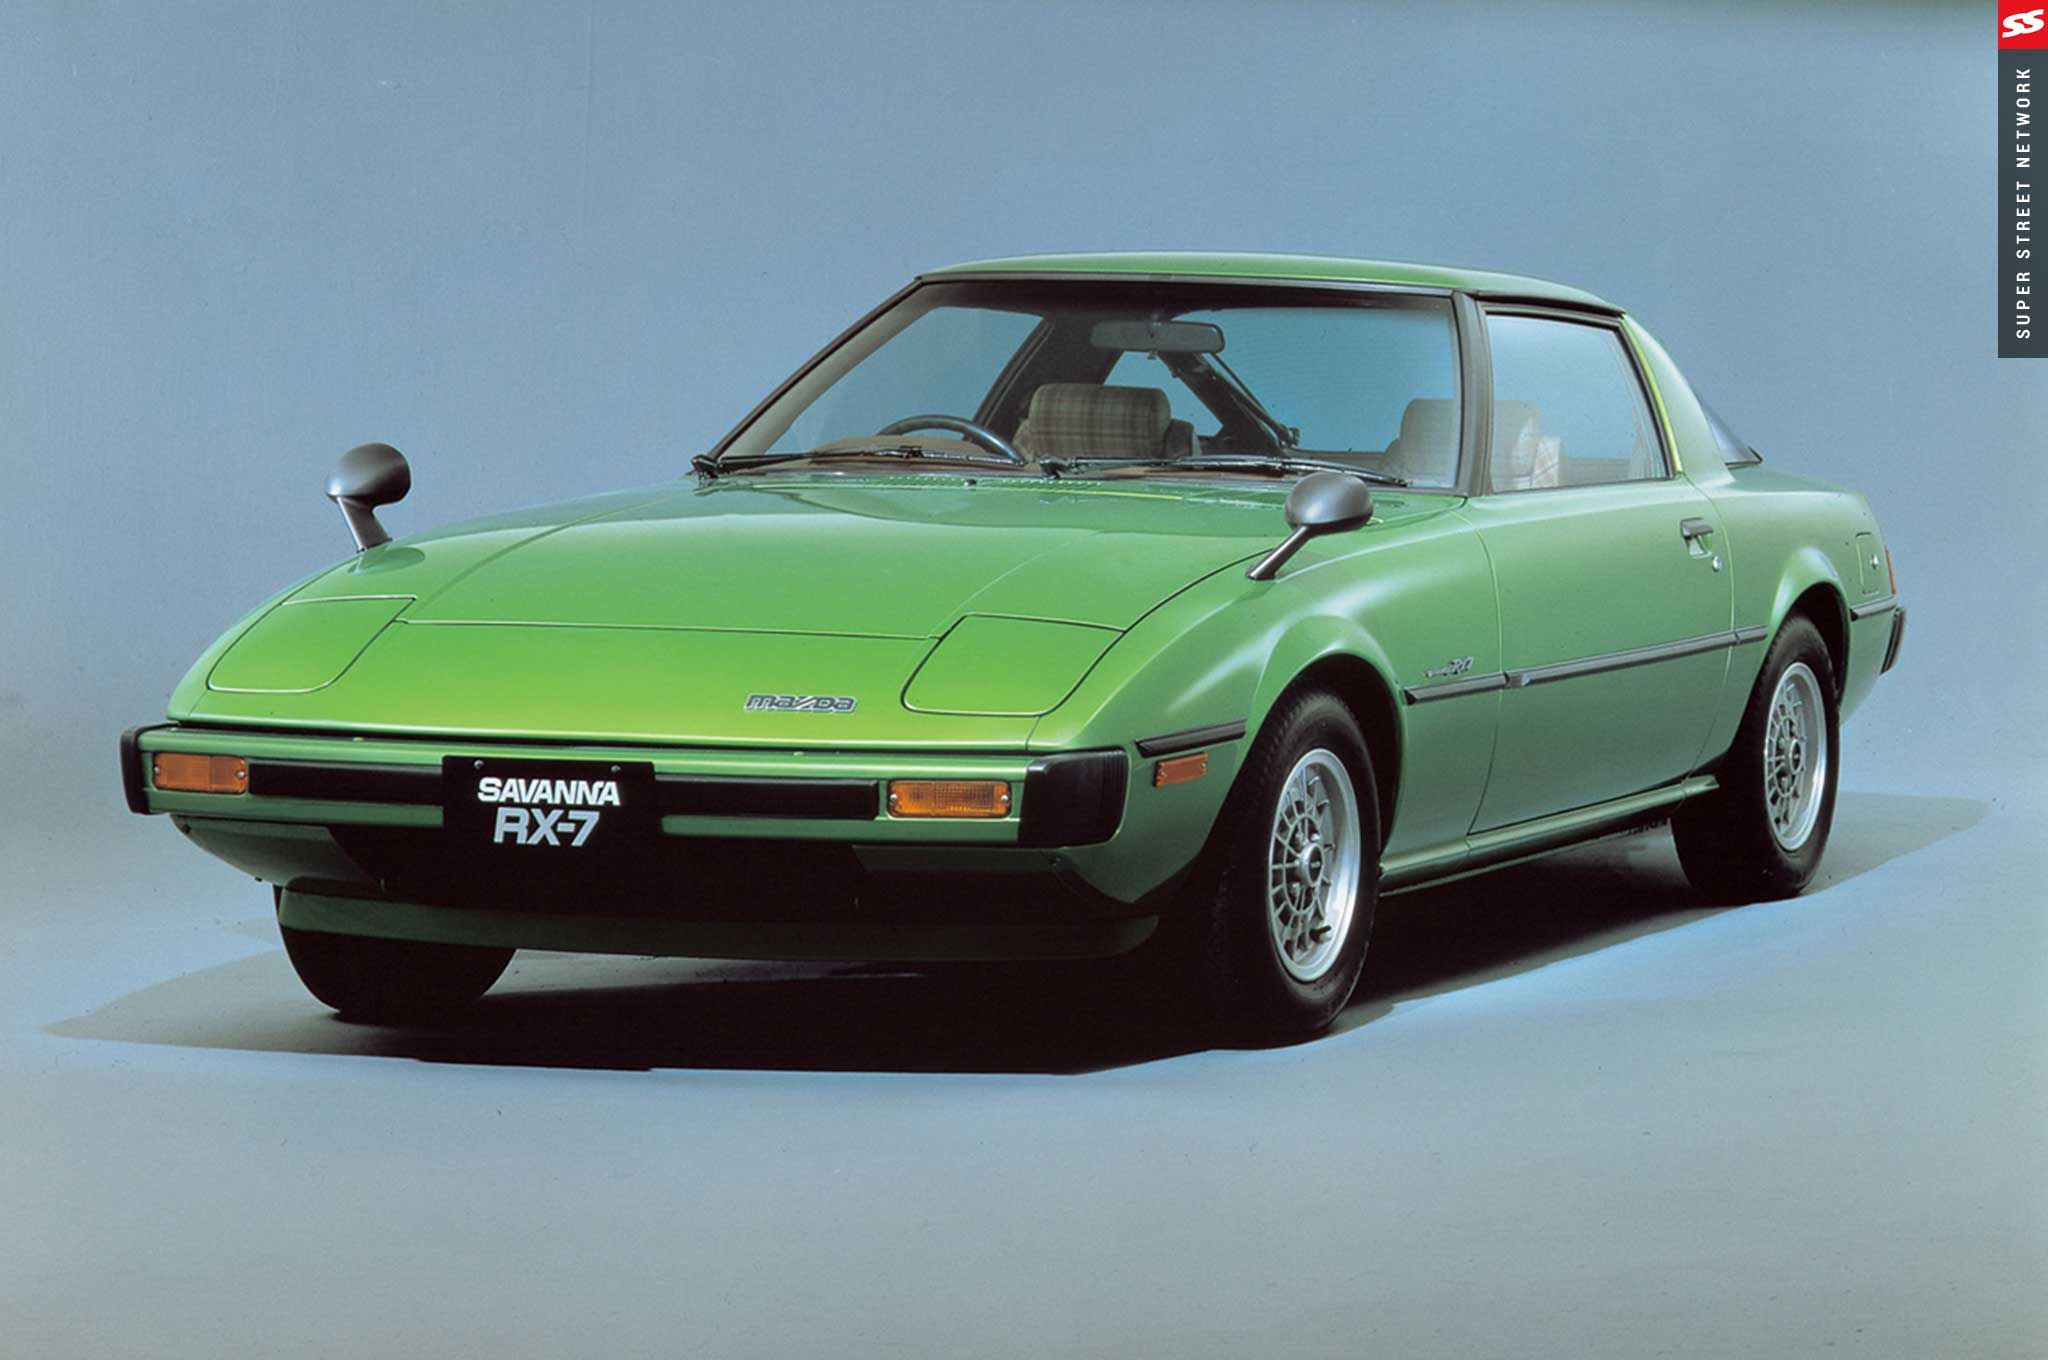 «Кроме того, успех RX-7 в соревнованиях по всему миру еще больше укрепил его положение как одного из лучших спортивных автомобилей в мире», - говорит Mazda. «RX-7 одержал победу в 24-часовой гонке в Ле-Мане в 1981 году, участвовал в впечатляющем ралл